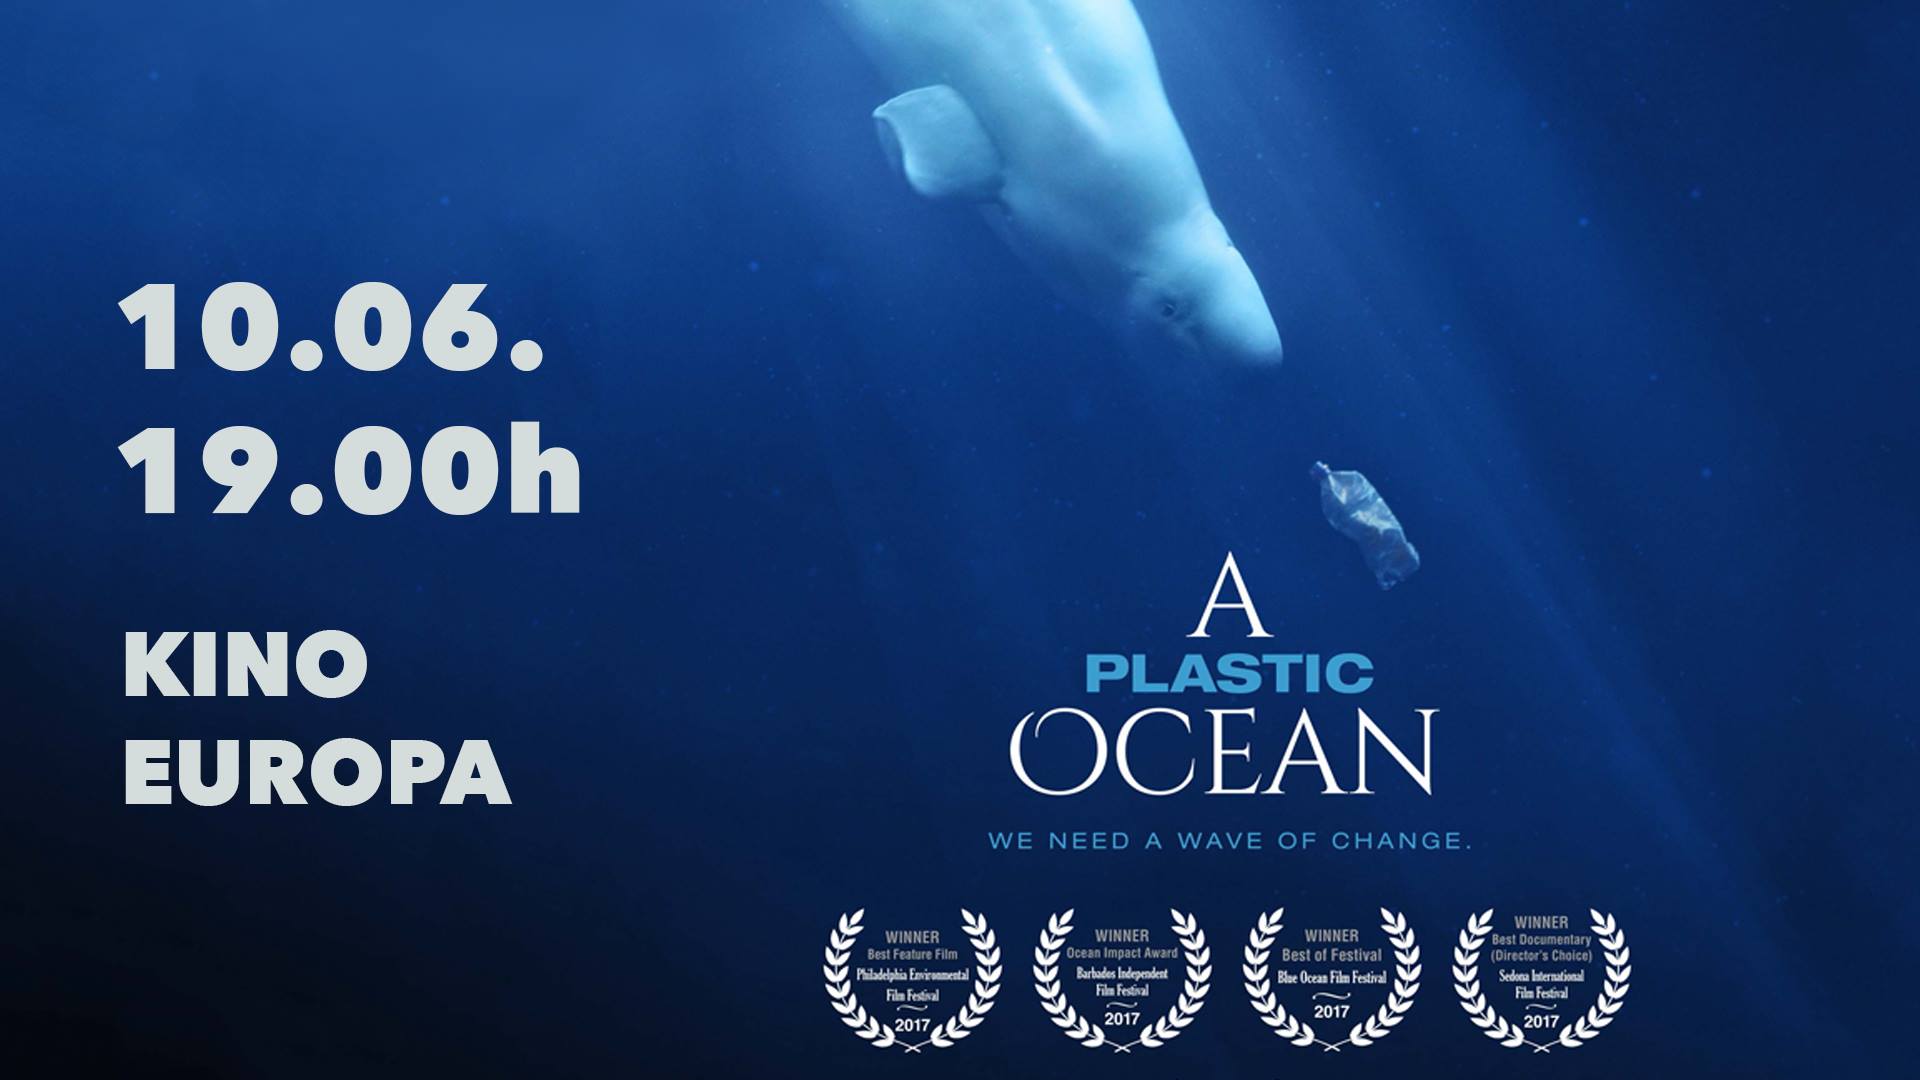 [:en]A Plastic Ocean10.06.2018. Kino Europa